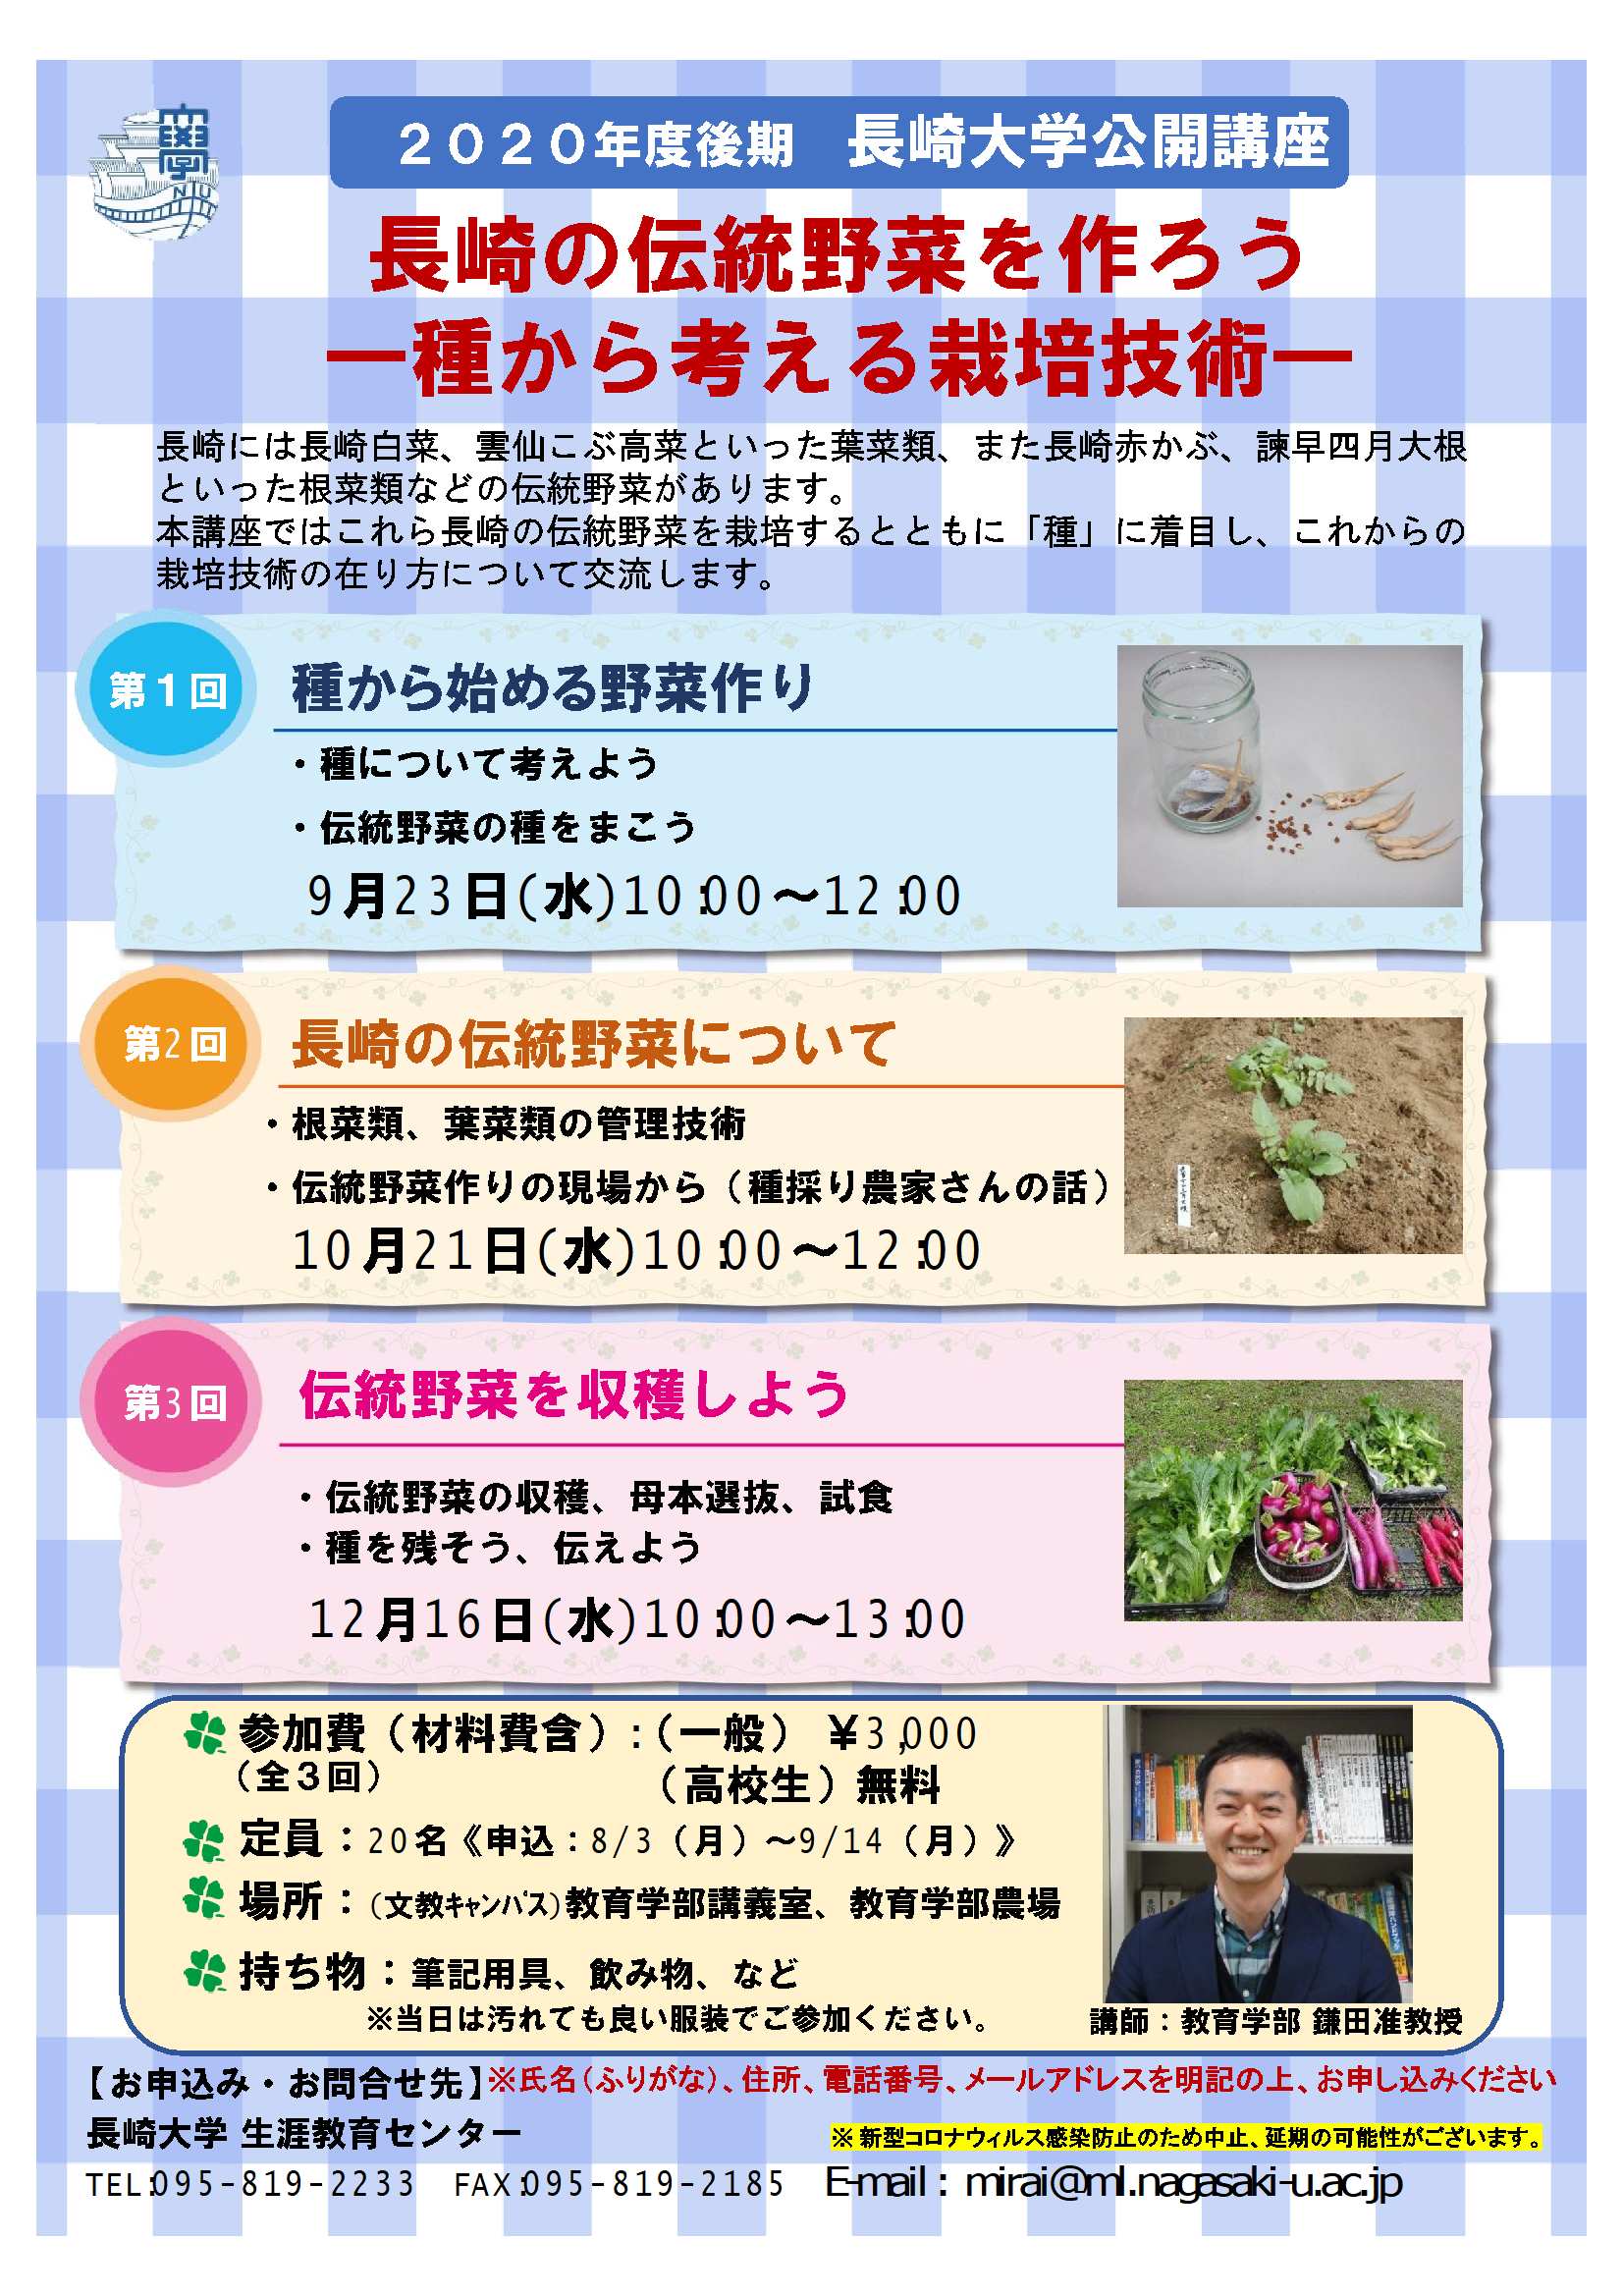 「長崎の伝統野菜を作ろう ―種から考える栽培技術―」